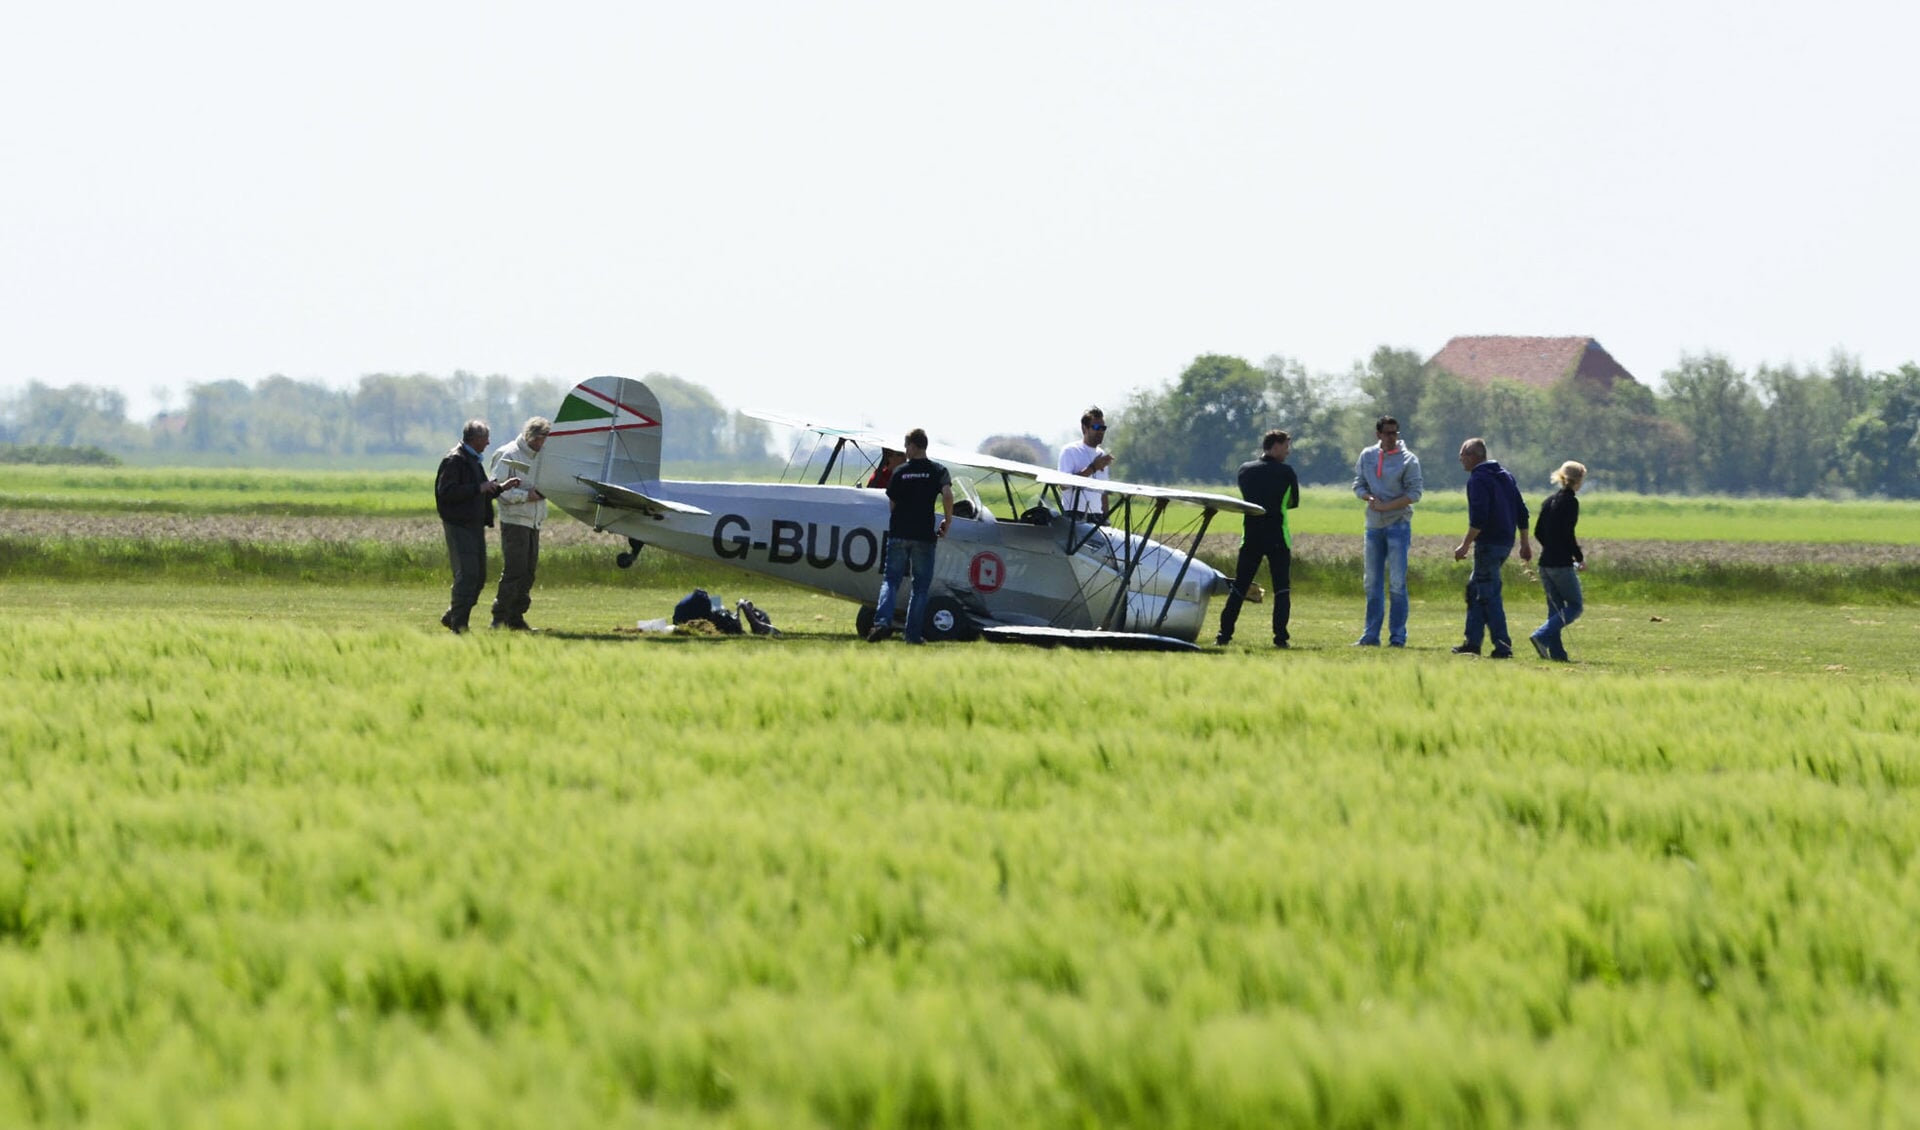 Het zwaarbeschadigde sportvliegtuig.
(Foto Marcel Winter/Texelphoto.nl)